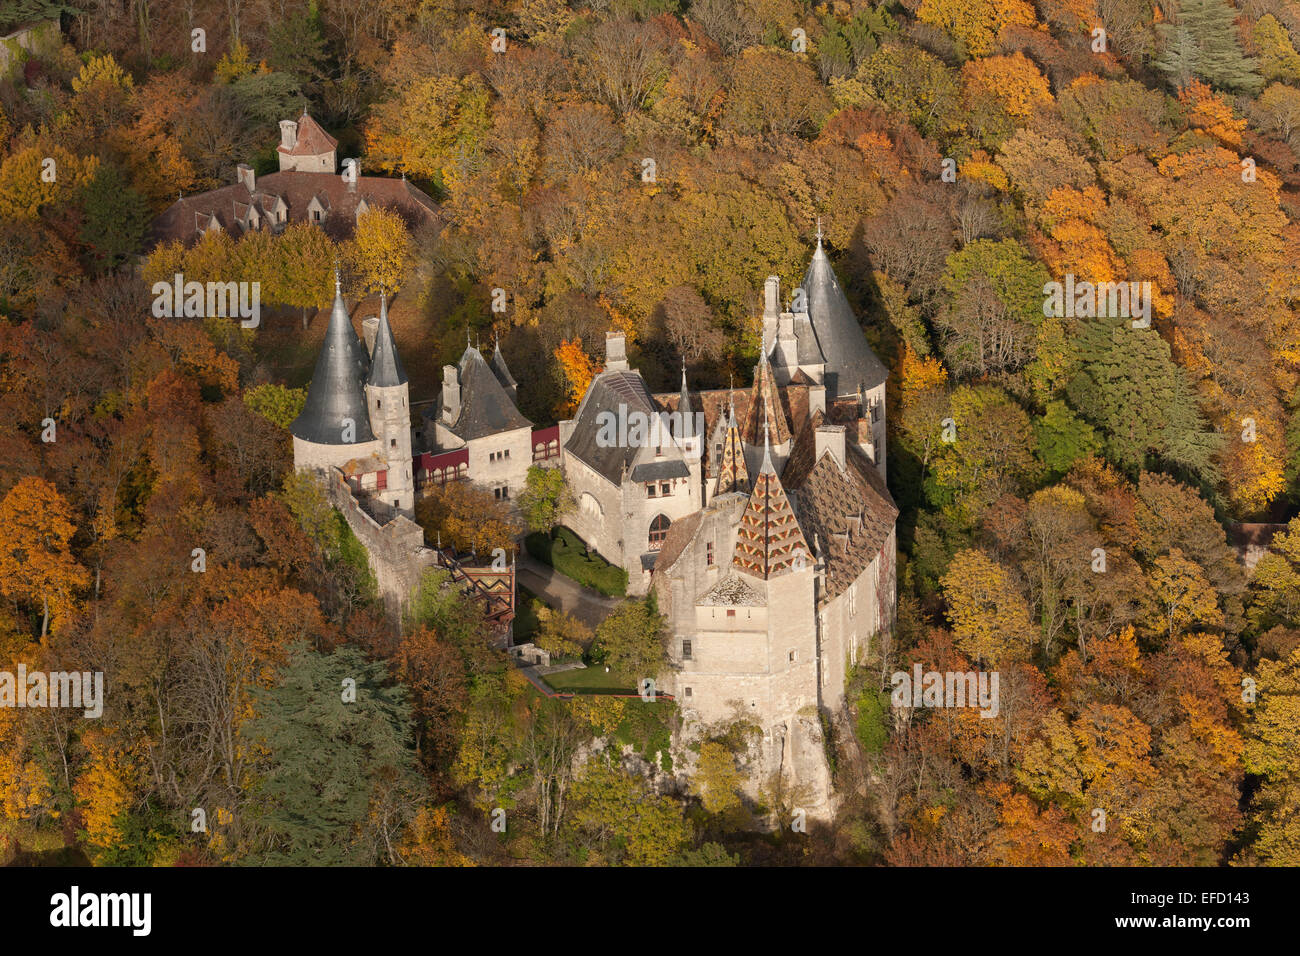 VISTA AEREA. Castello medievale in una zona boschiva dai colori autunnali. Castello di la Rochepot, Côte d'Or, Bourgogne-Franche-Comté, Francia. Foto Stock